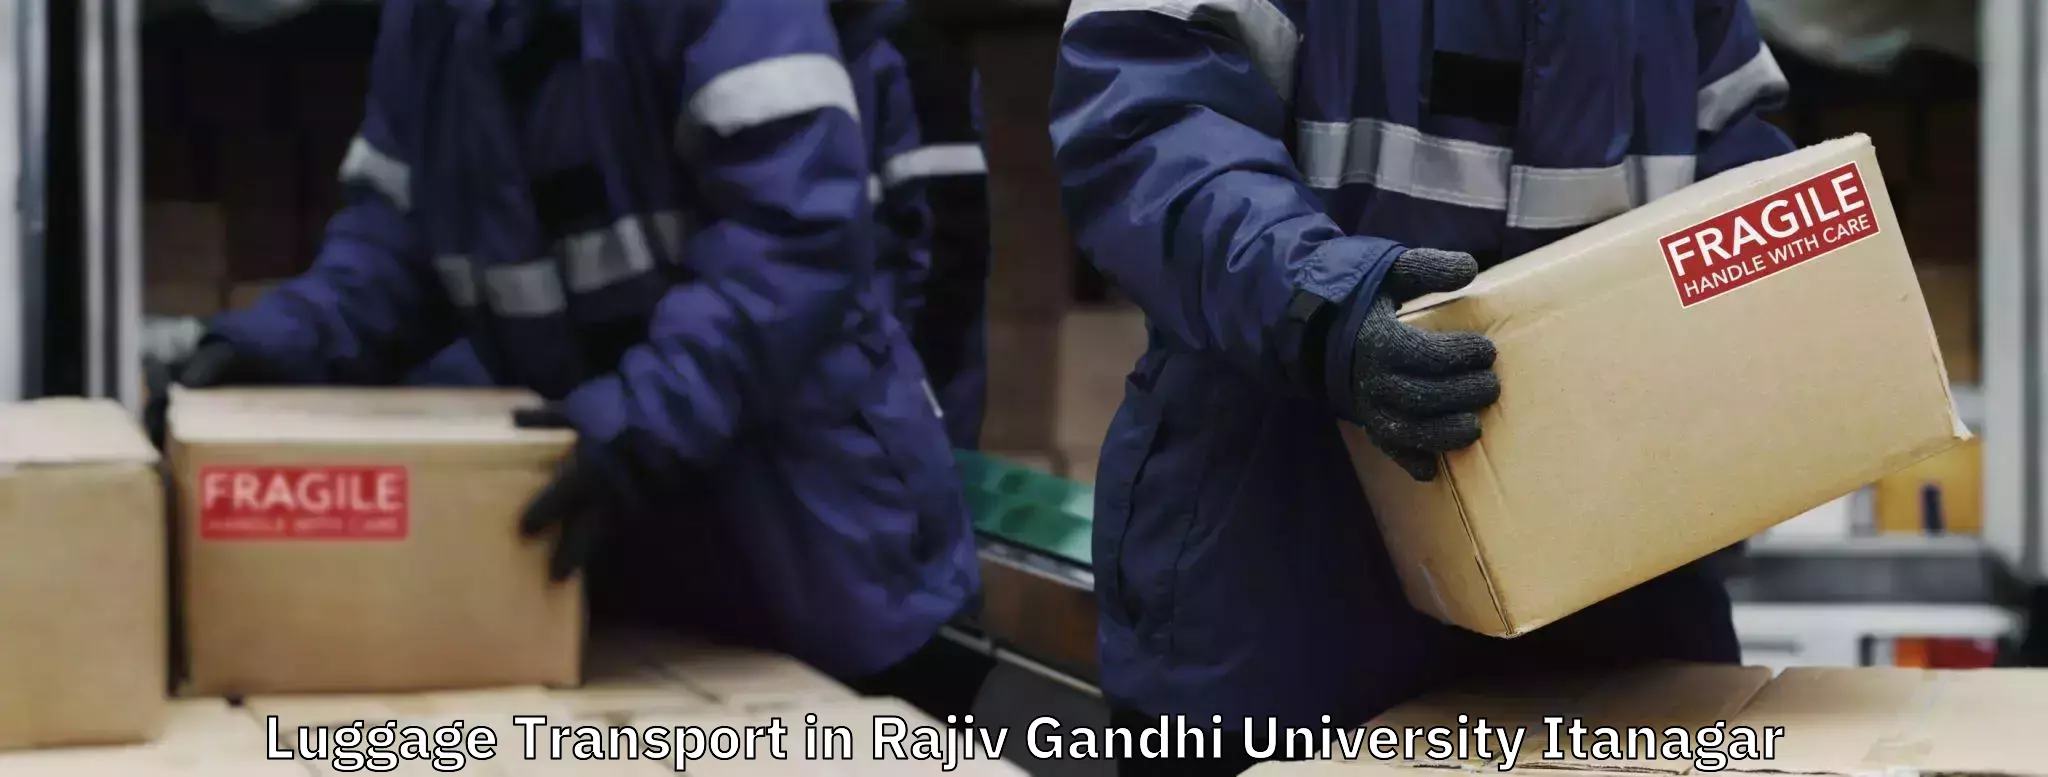 Musical instruments luggage transport in Rajiv Gandhi University Itanagar